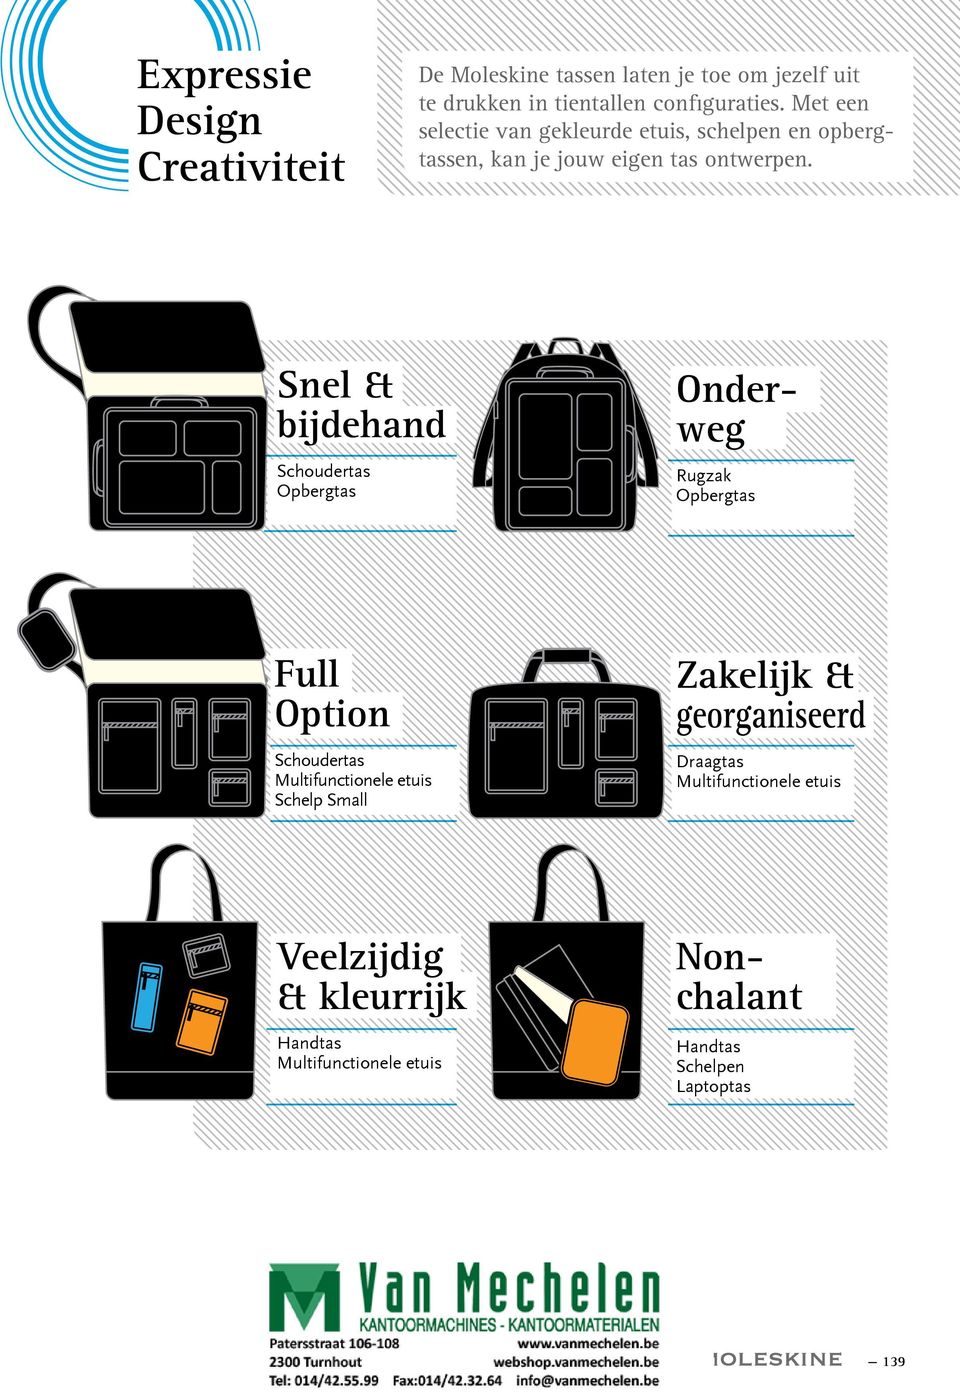 Met een selectie van gekleurde etuis, schelpen en opbergtassen, kan je jouw eigen tas ontwerpen.